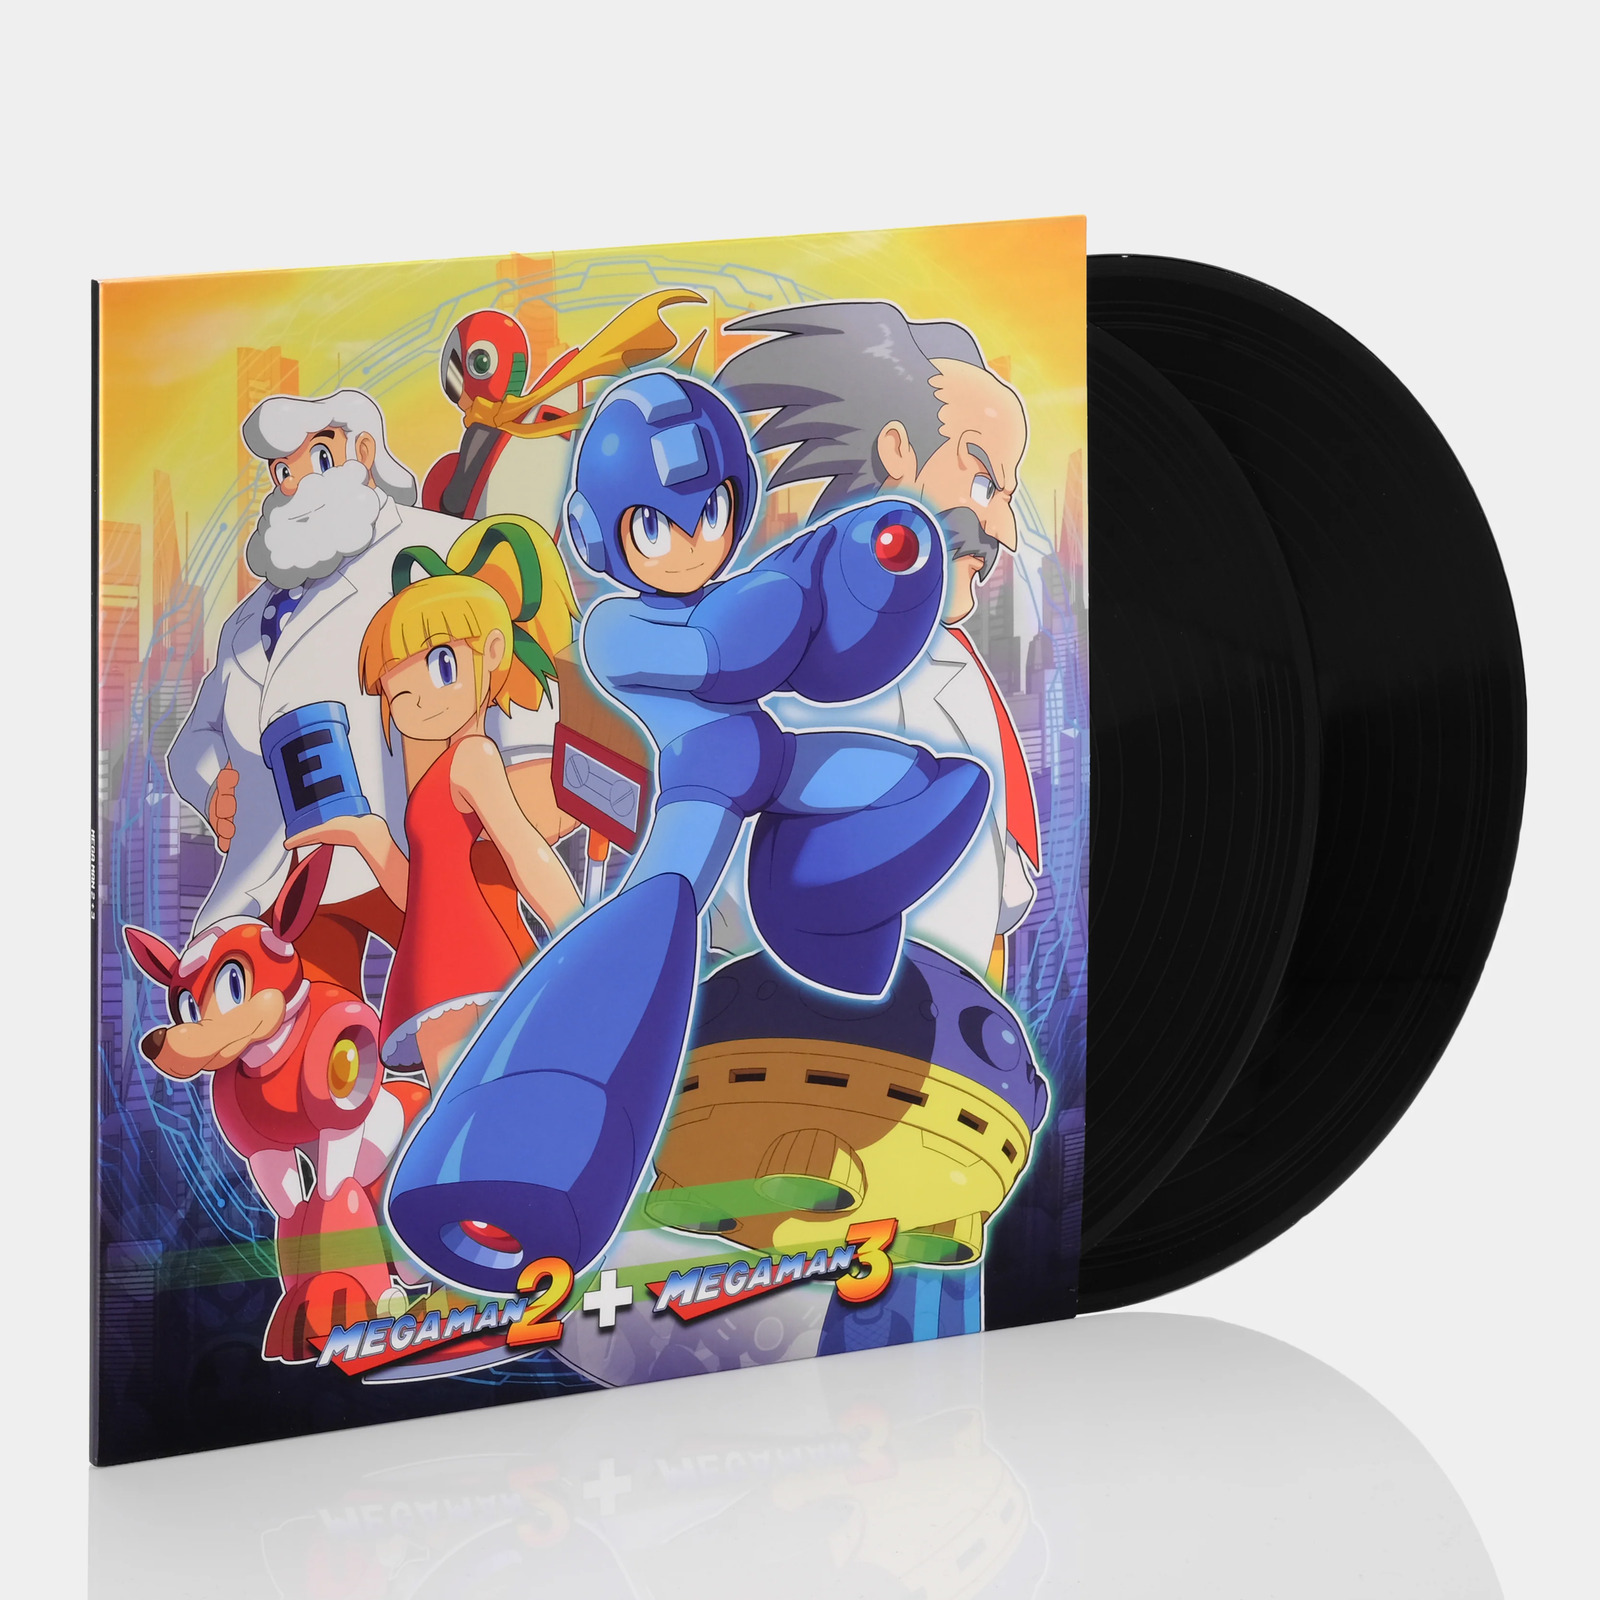 Capcom Sound Team - Mega Man 2 + Mega Man 3 LP Vinyl Record